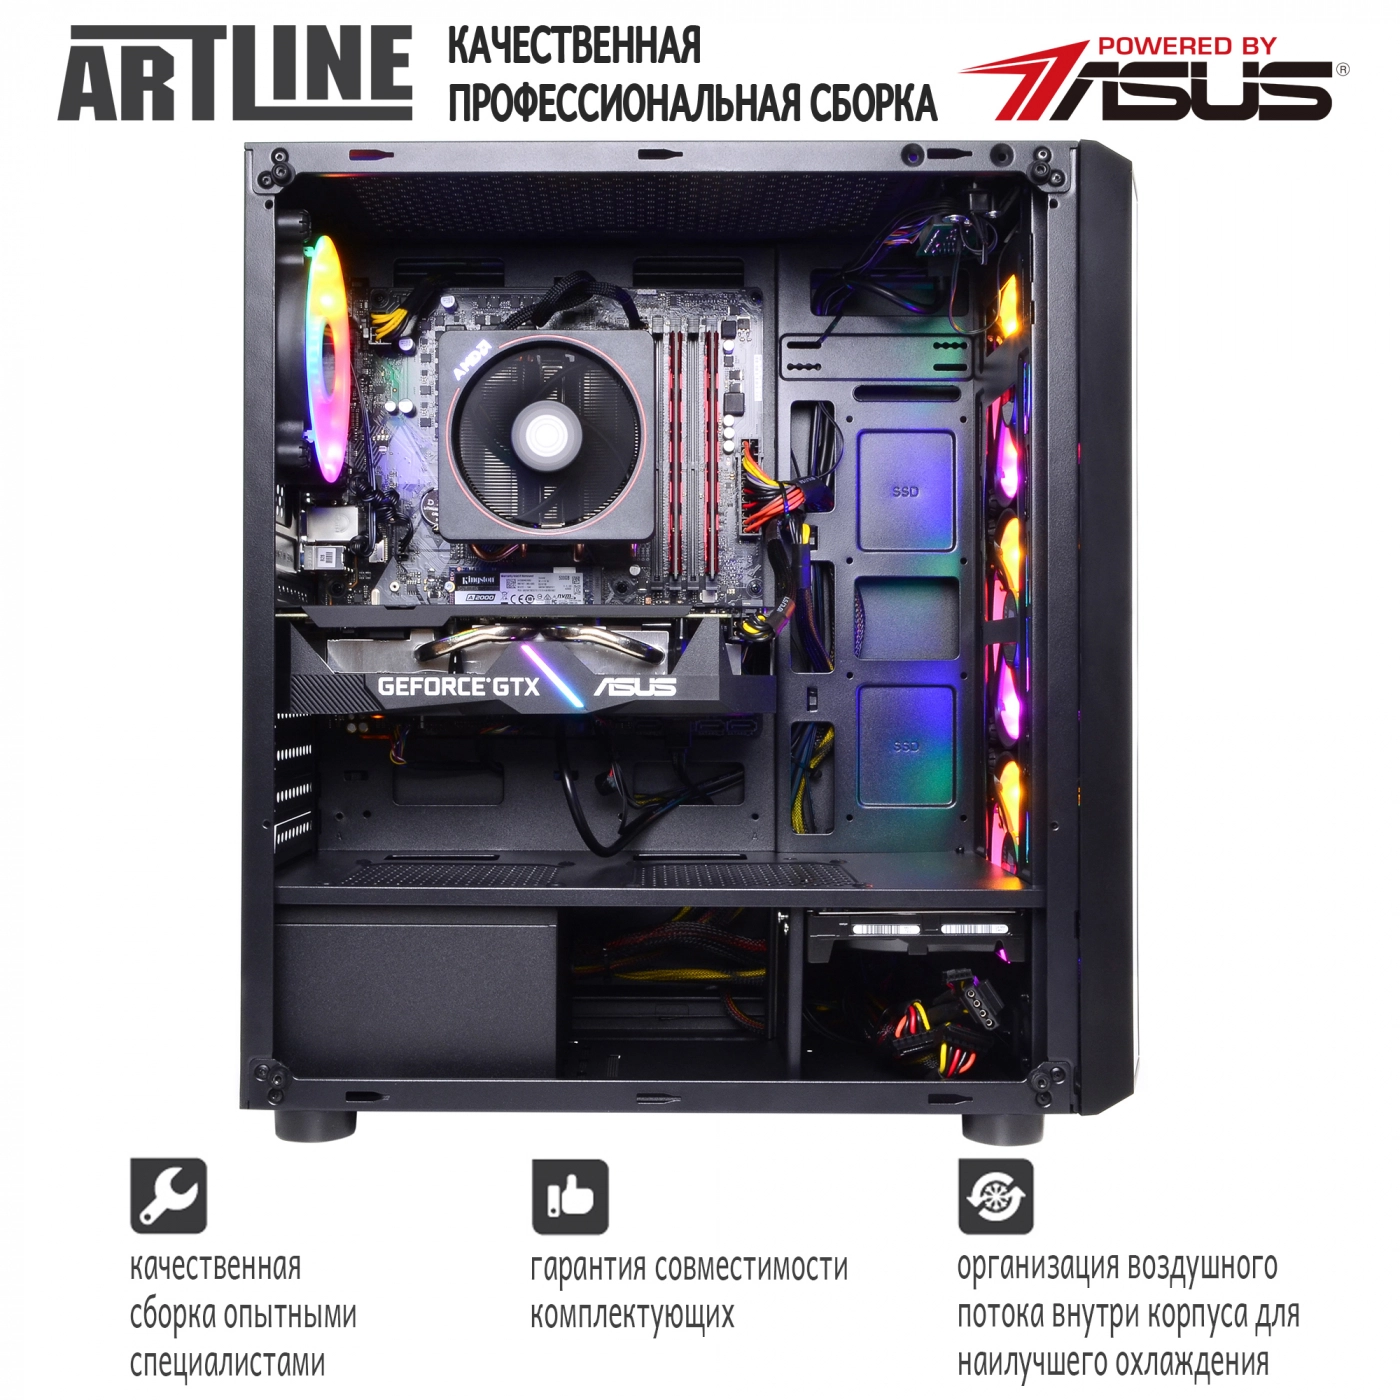 Купить Компьютер ARTLINE Gaming X83v01 - фото 9